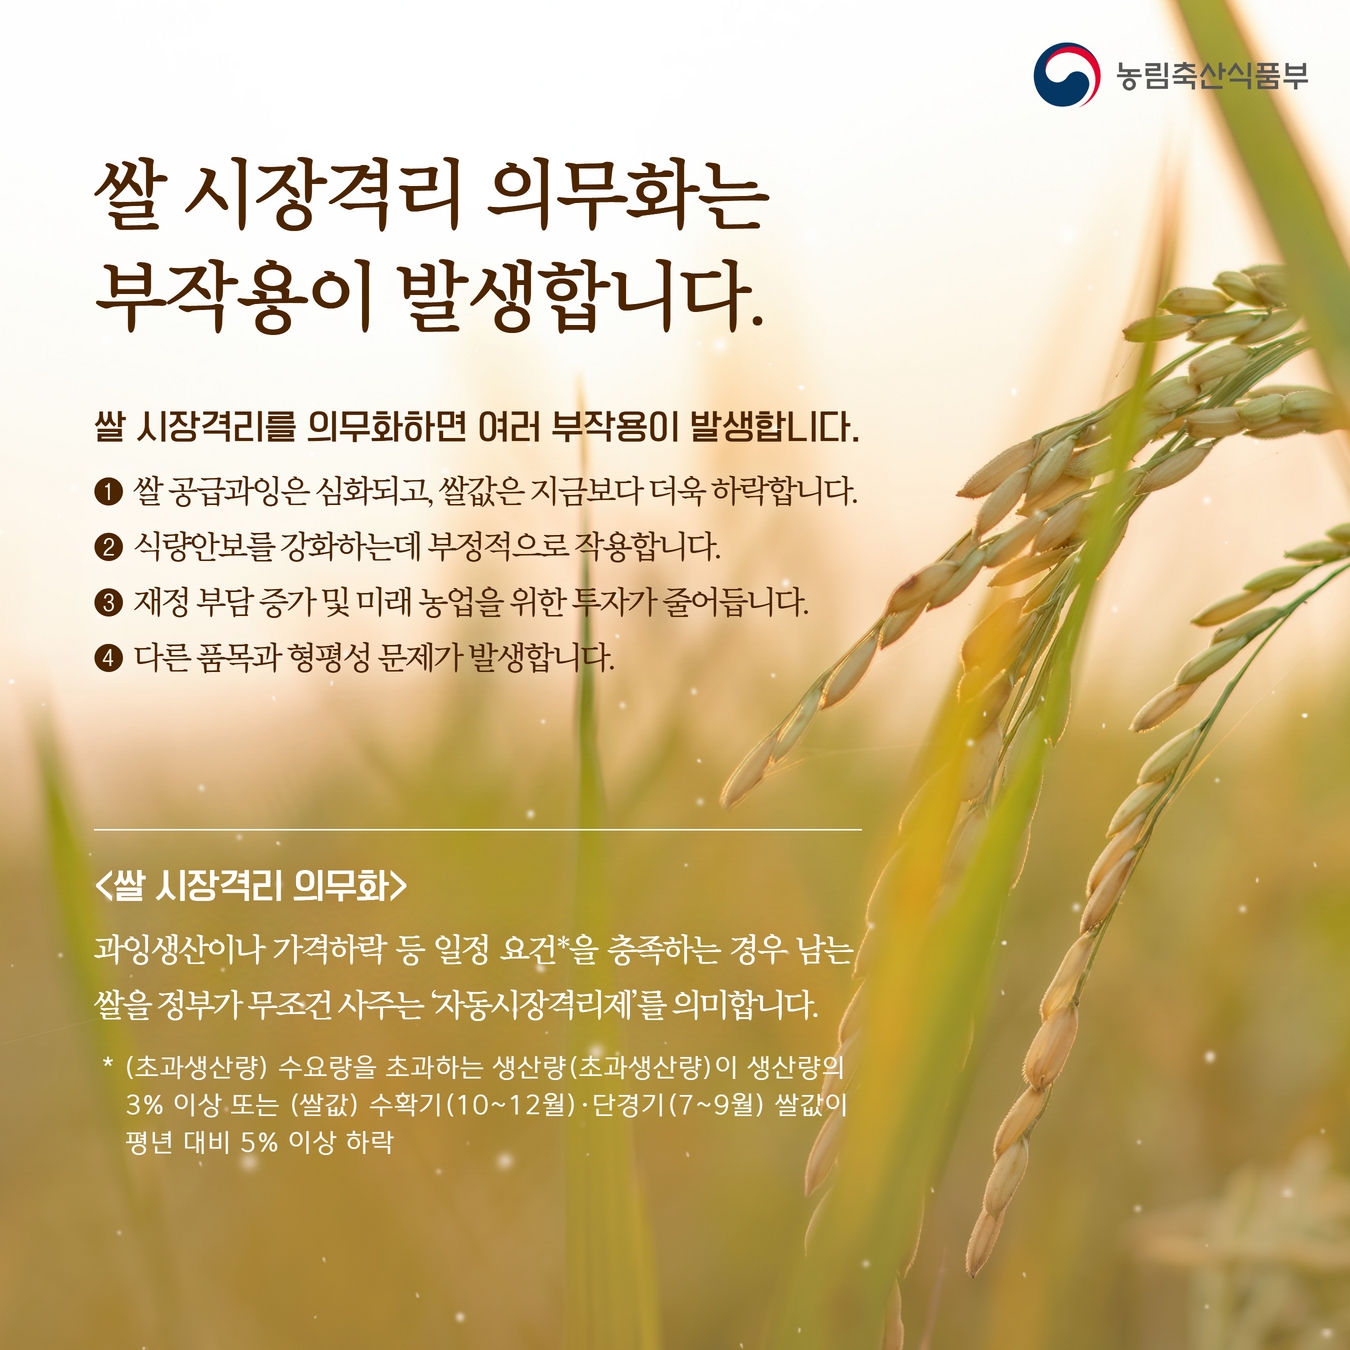 쌀 시장격리 의무화를 위한 양곡관리법 개정은 쌀값 안정의 근본적인 해결책이 아닙니다. 2.jpg